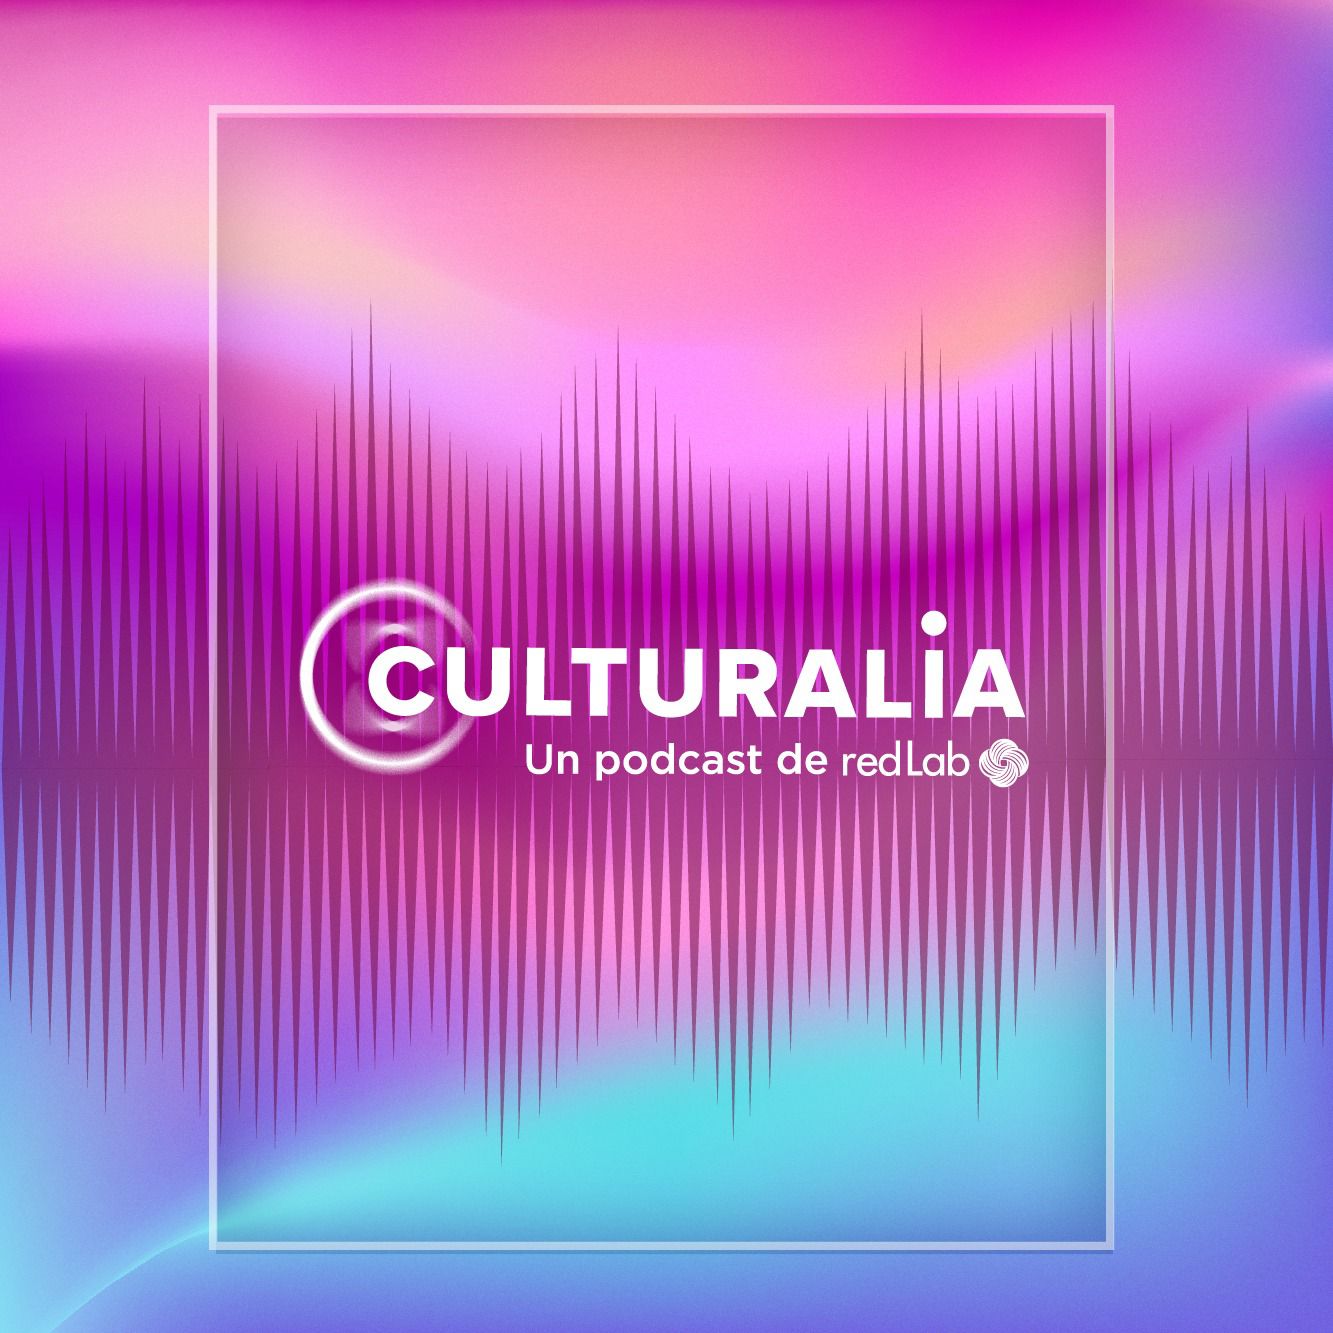 La plataforma Culturalia renueva imagen para dar la bienvenida a su nueva temporada